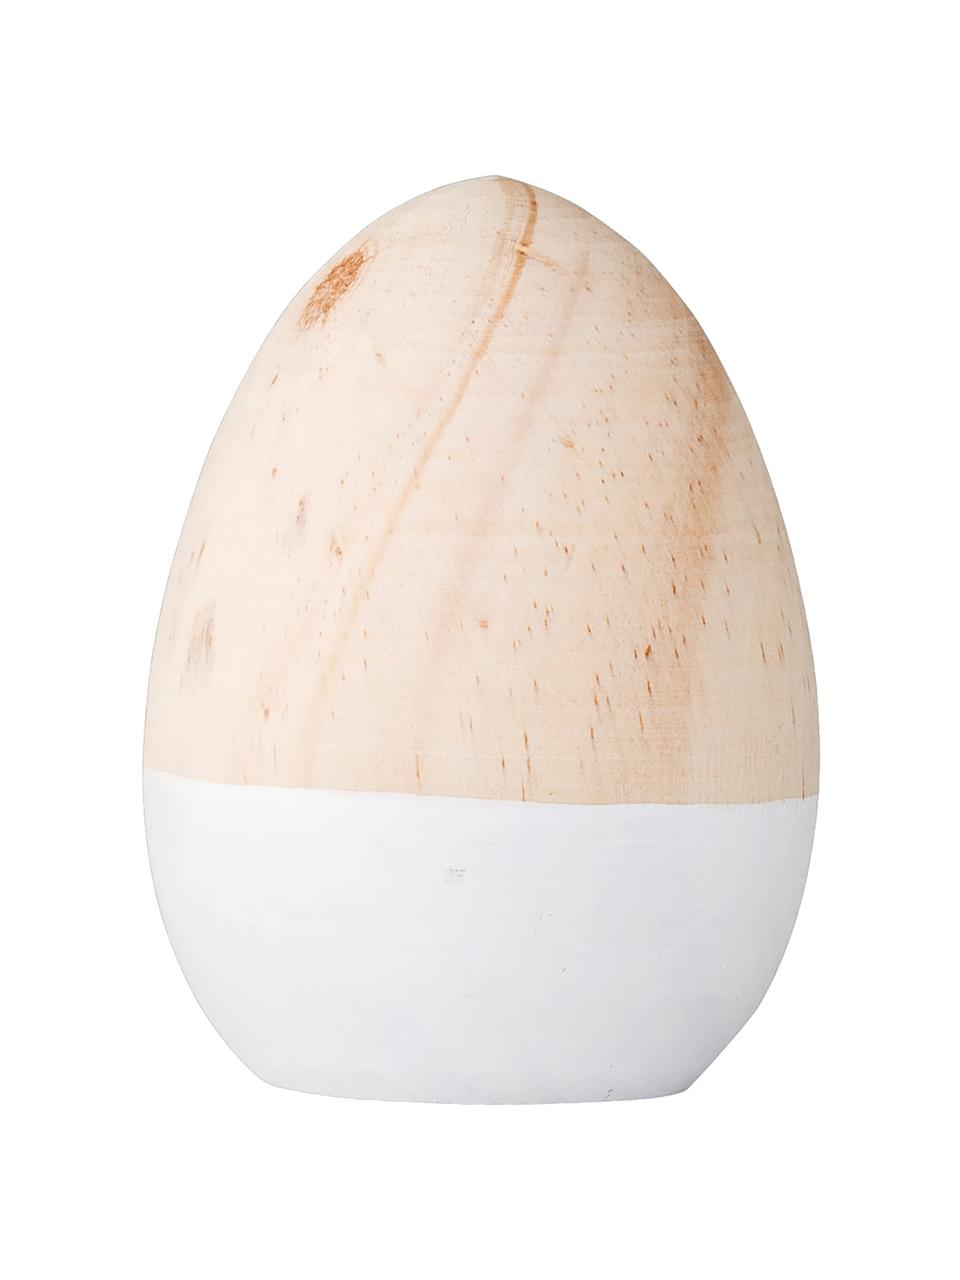 Dekorativní vajíčko Egg, Lakované březové dřevo, Bříza, bílá, Ø 7 cm